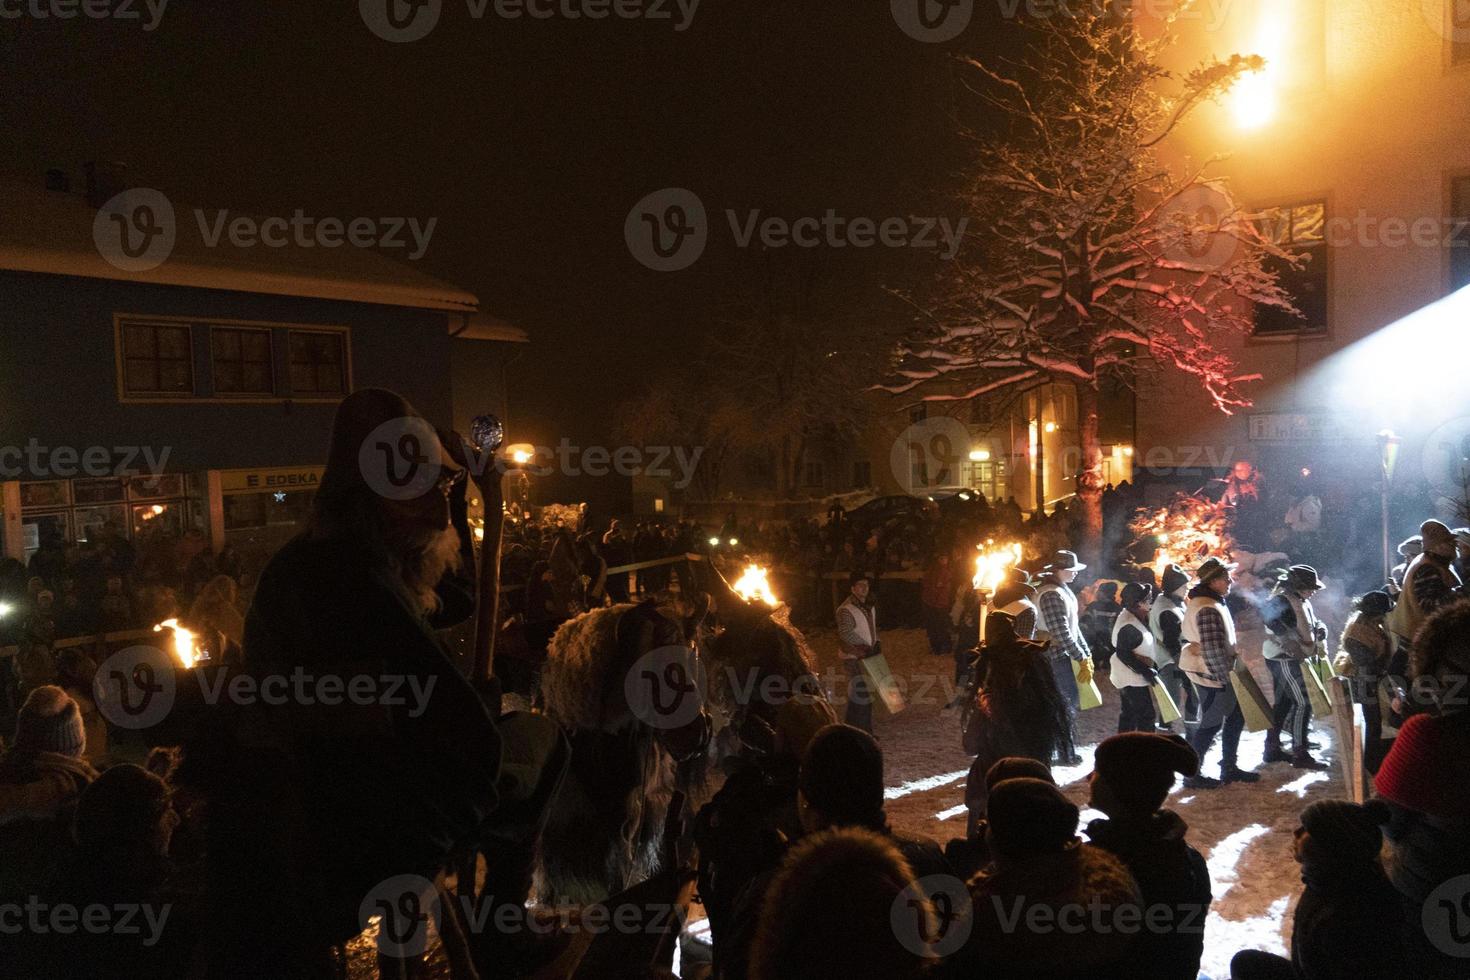 neuschoenau, alemanha - 5 de janeiro de 2019 - celebração da noite de lousnacht com o espírito da floresta waldgeister na vila da bavária foto